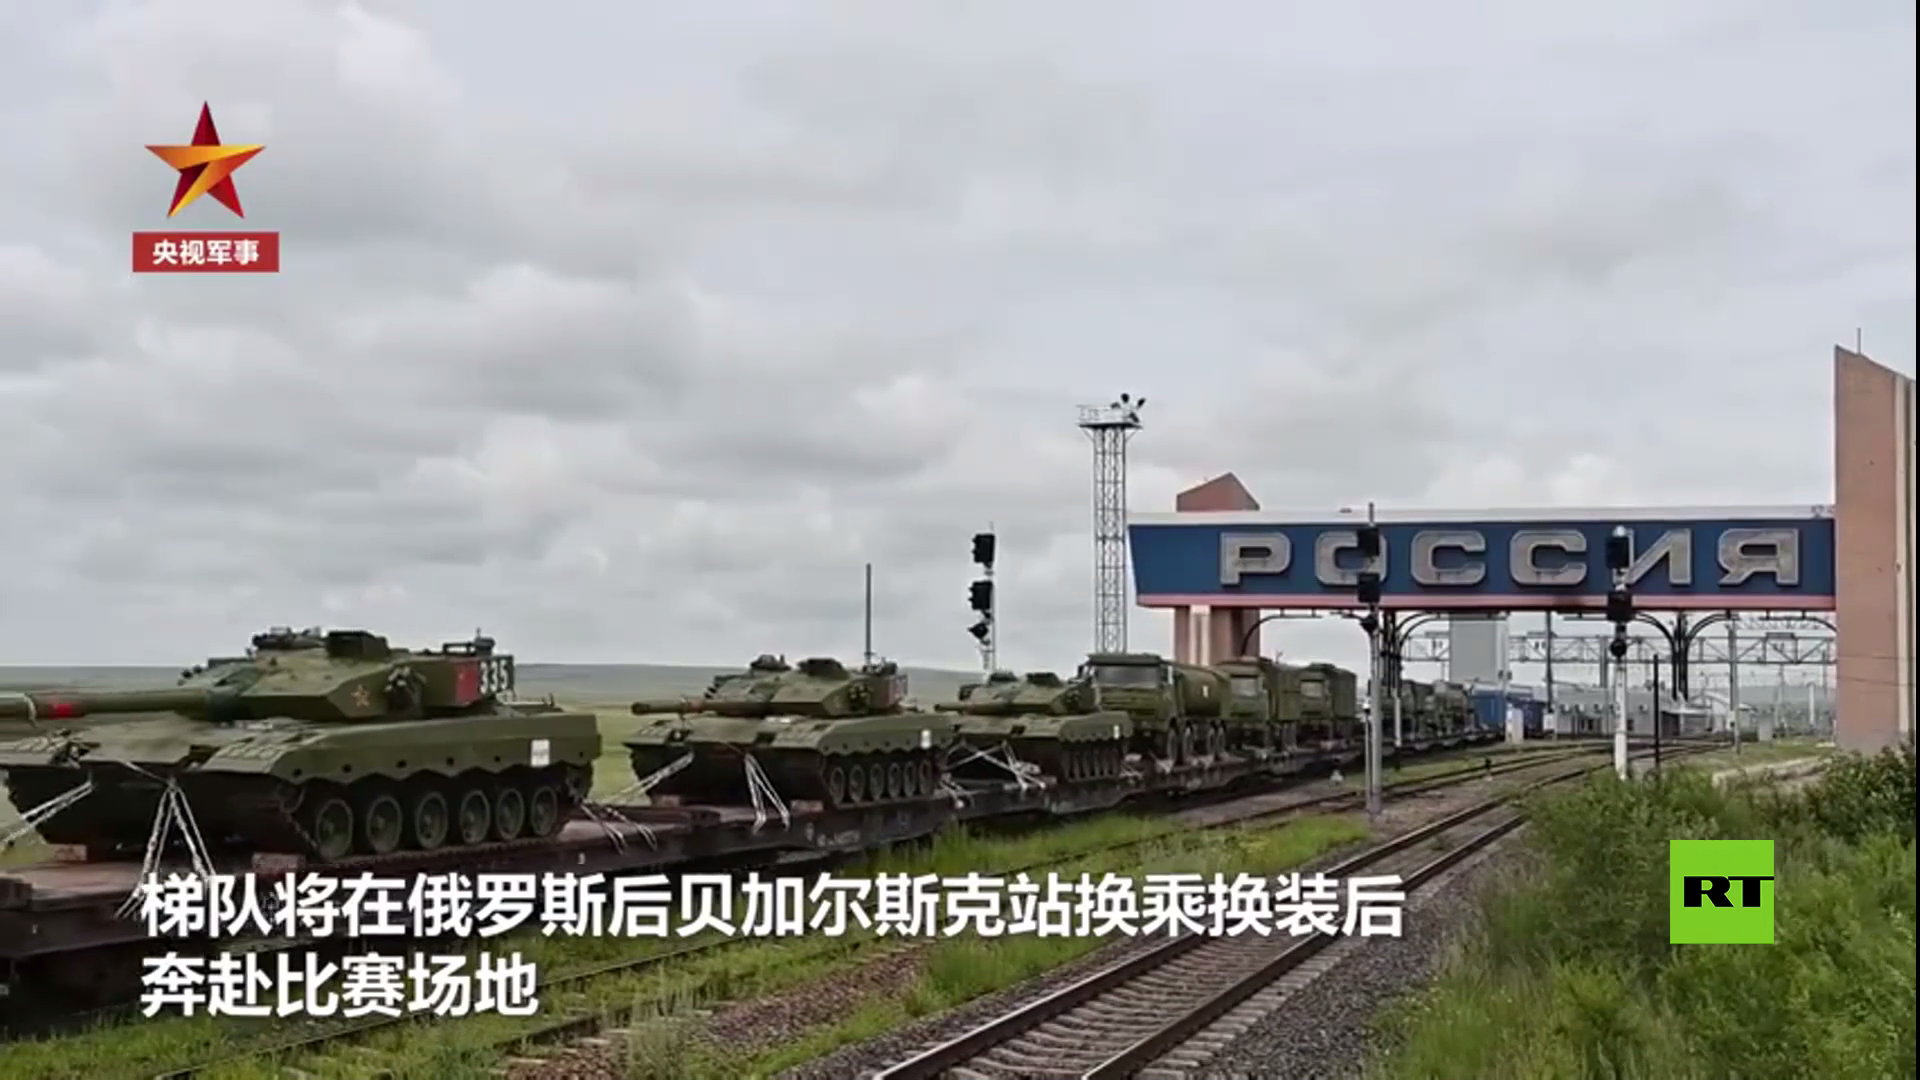 الجيش الصيني يصل موسكو للمشاركة في مسابقة 